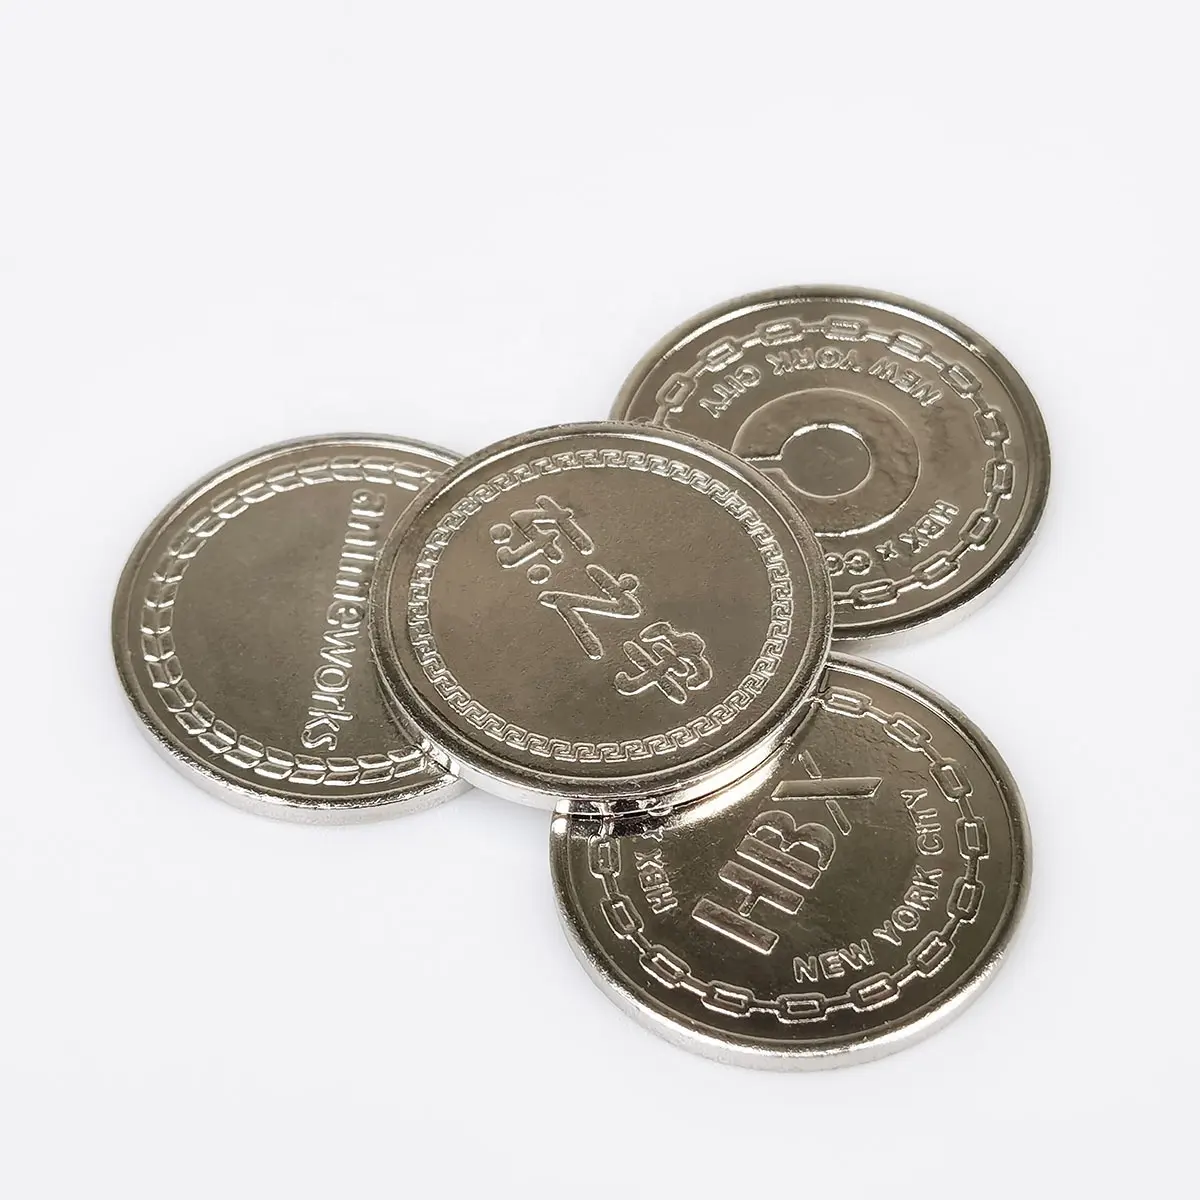 Kunden spezifische Spiel währung Token Münze für Klaue Gashapon Verkaufs automat Spielzimmer Münz akzeptor Slot